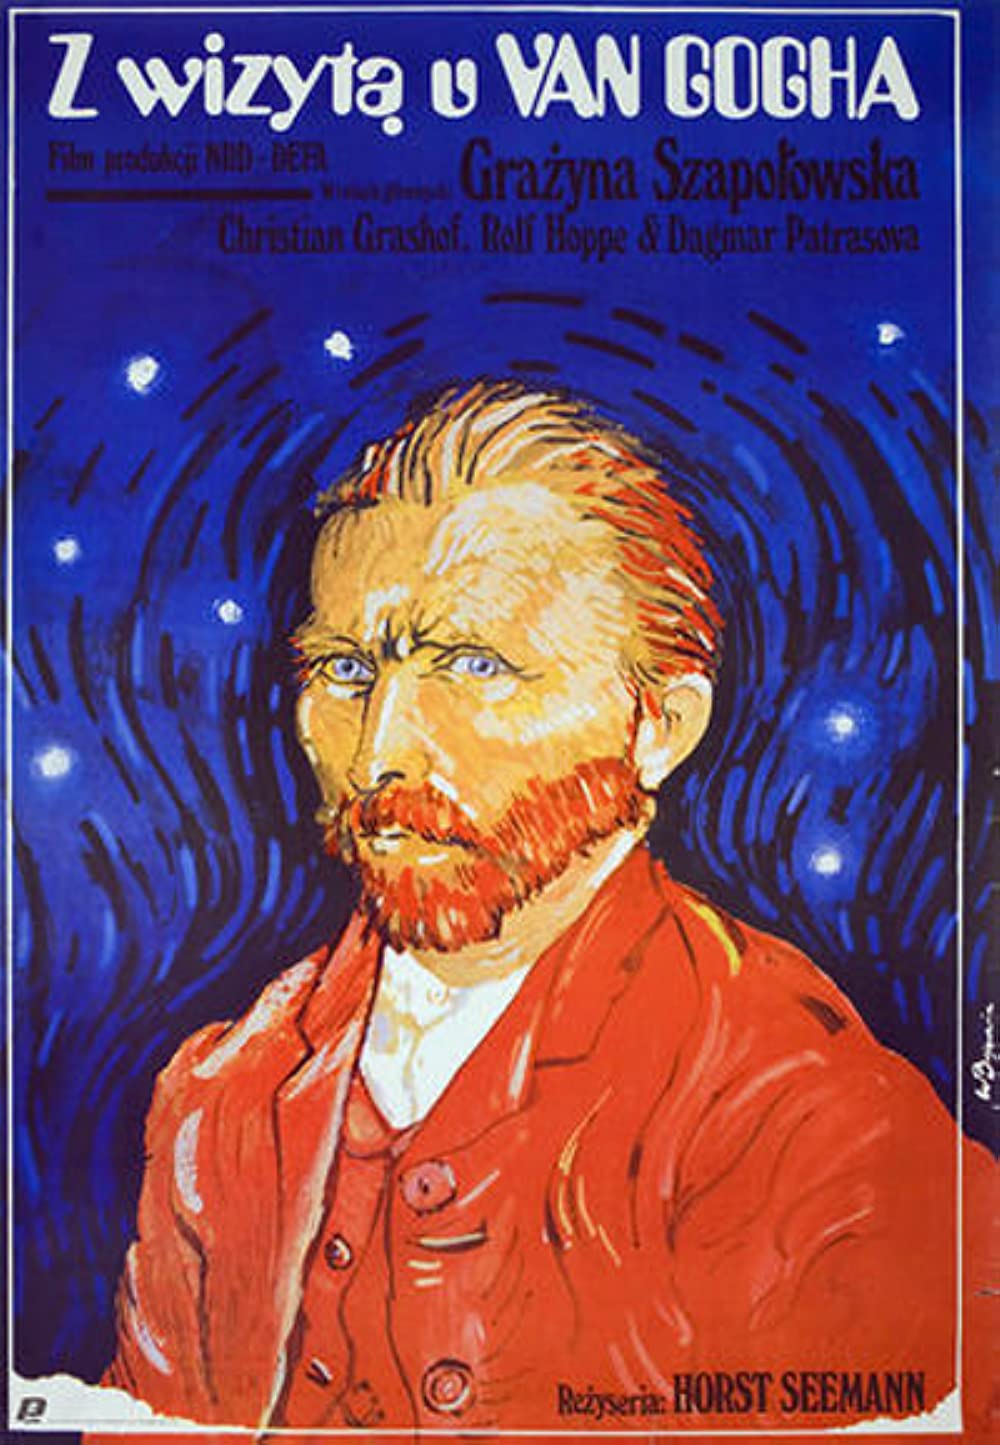 Filmbeschreibung zu Besuch bei van Gogh